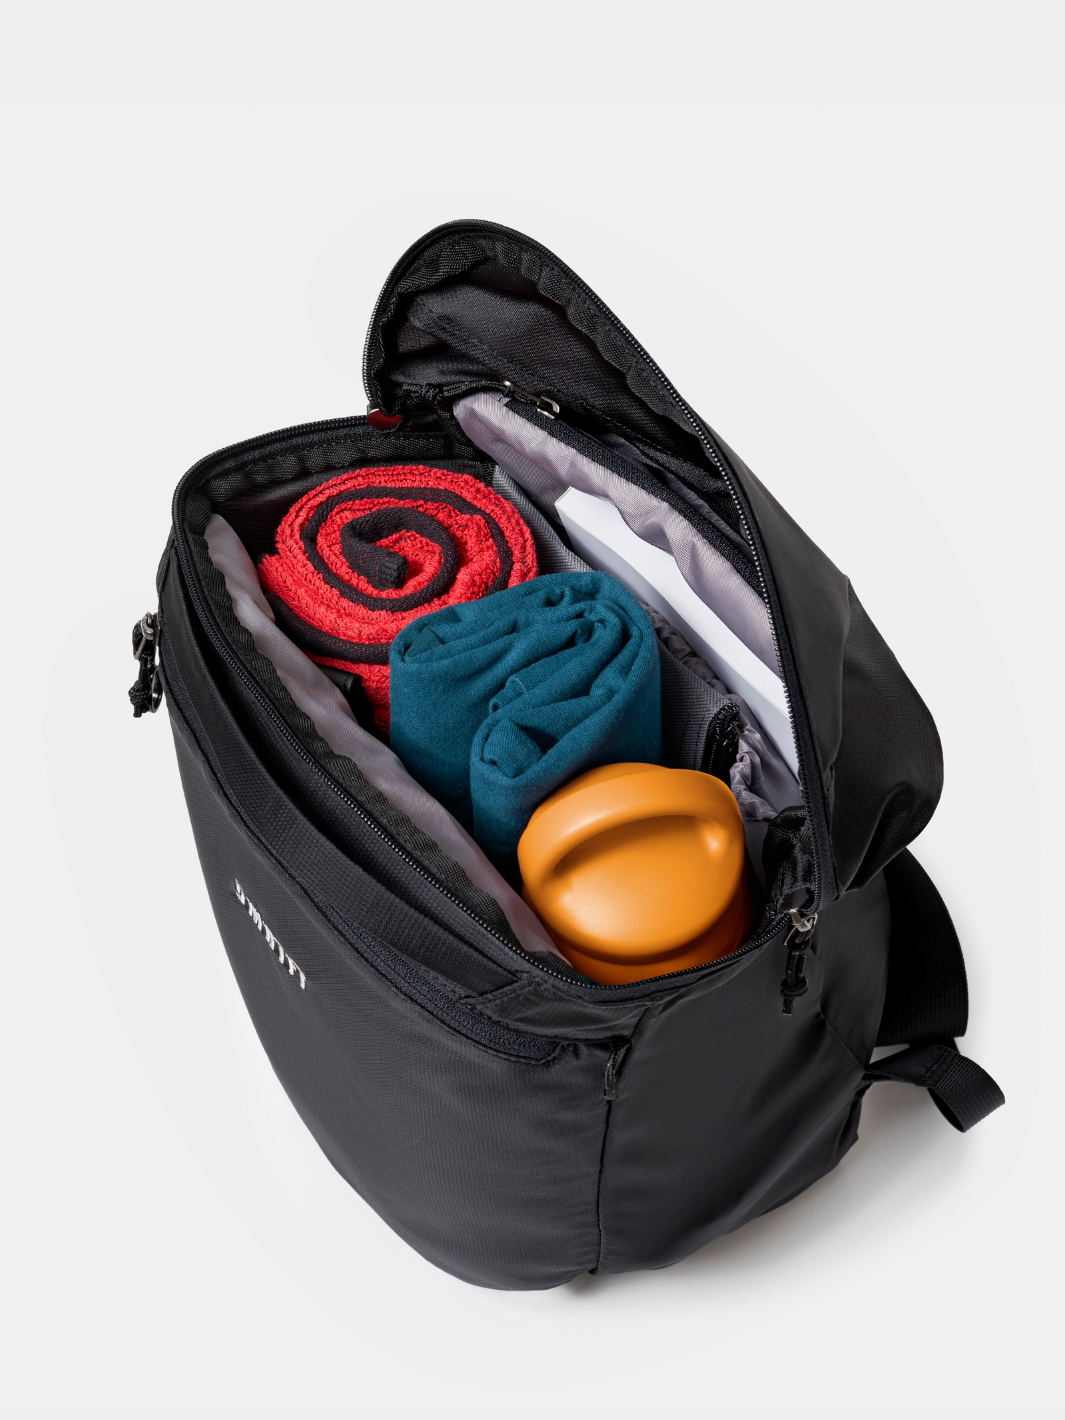 Black SMRTFT Backpack Openened | Red Gym Towel | SMRTPAC GO